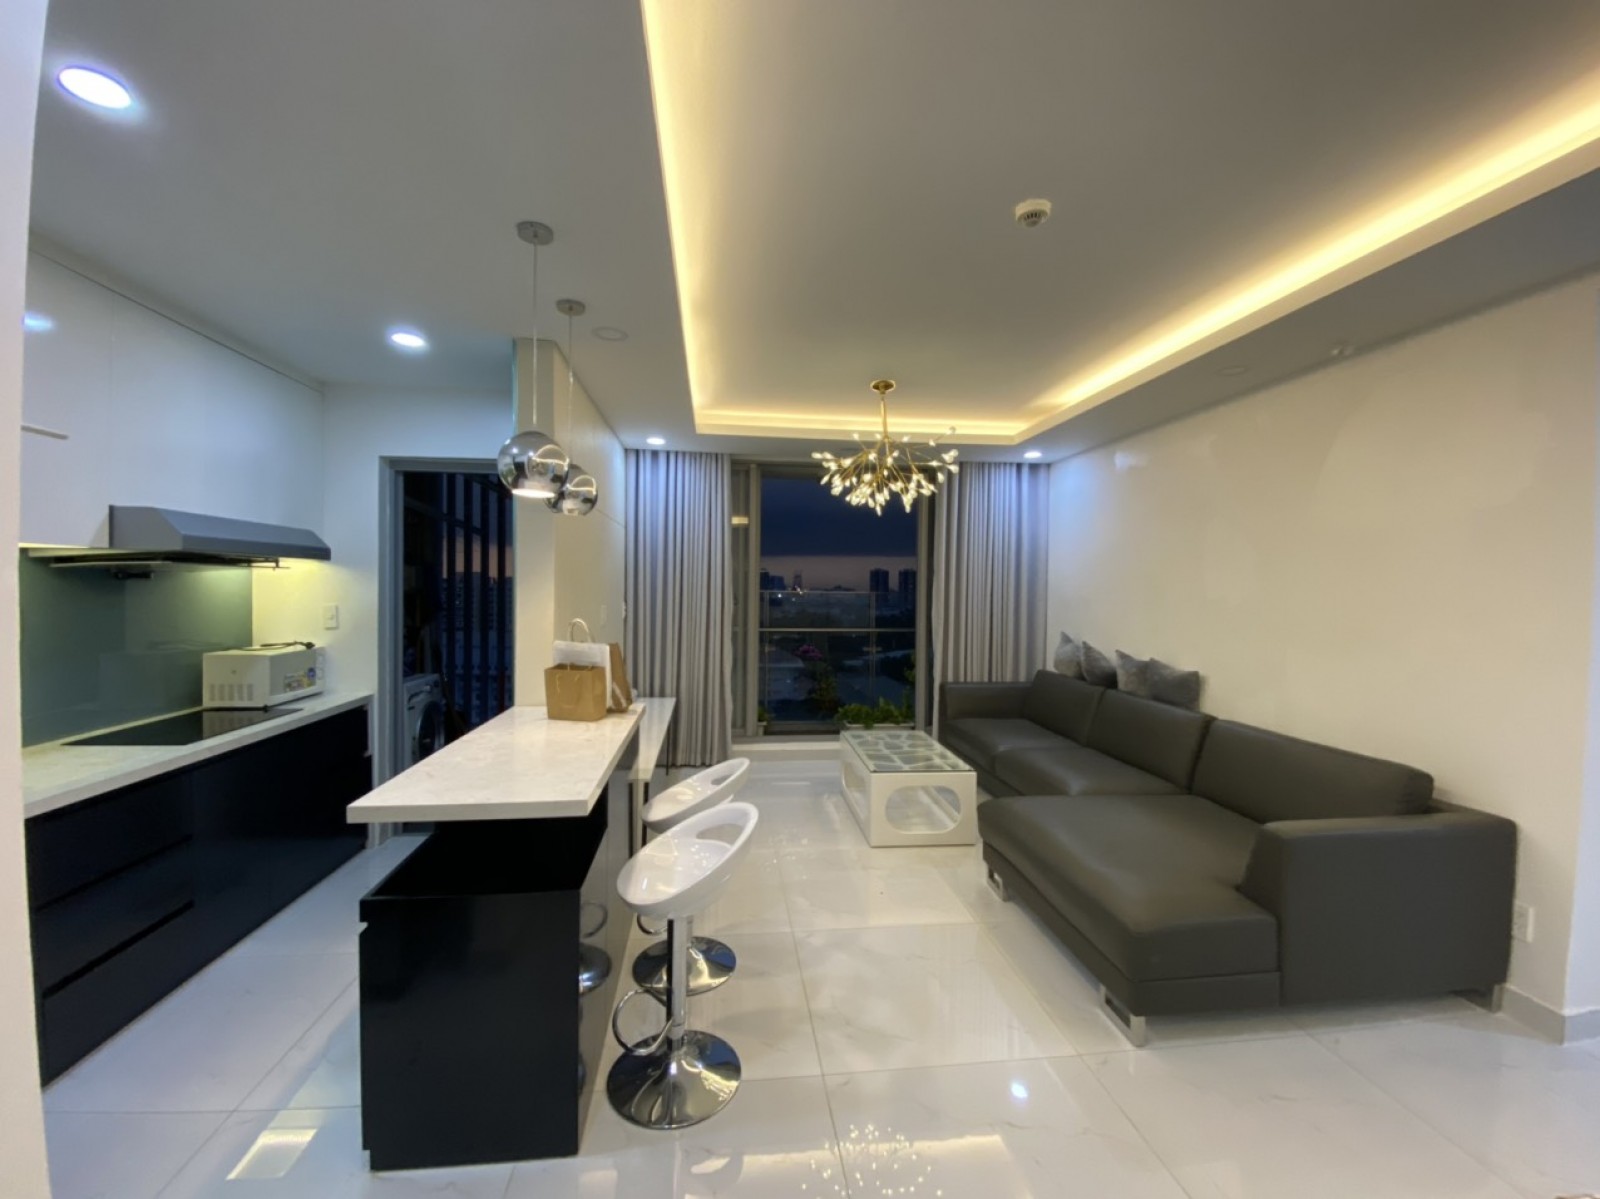 Chính chủ cho thuê căn hộ Midtown, Phú Mỹ Hưng nhà mới 100% giá 16 triệu (cam kết hình thật 100%) LH: 0902857558 THANH PHONG.